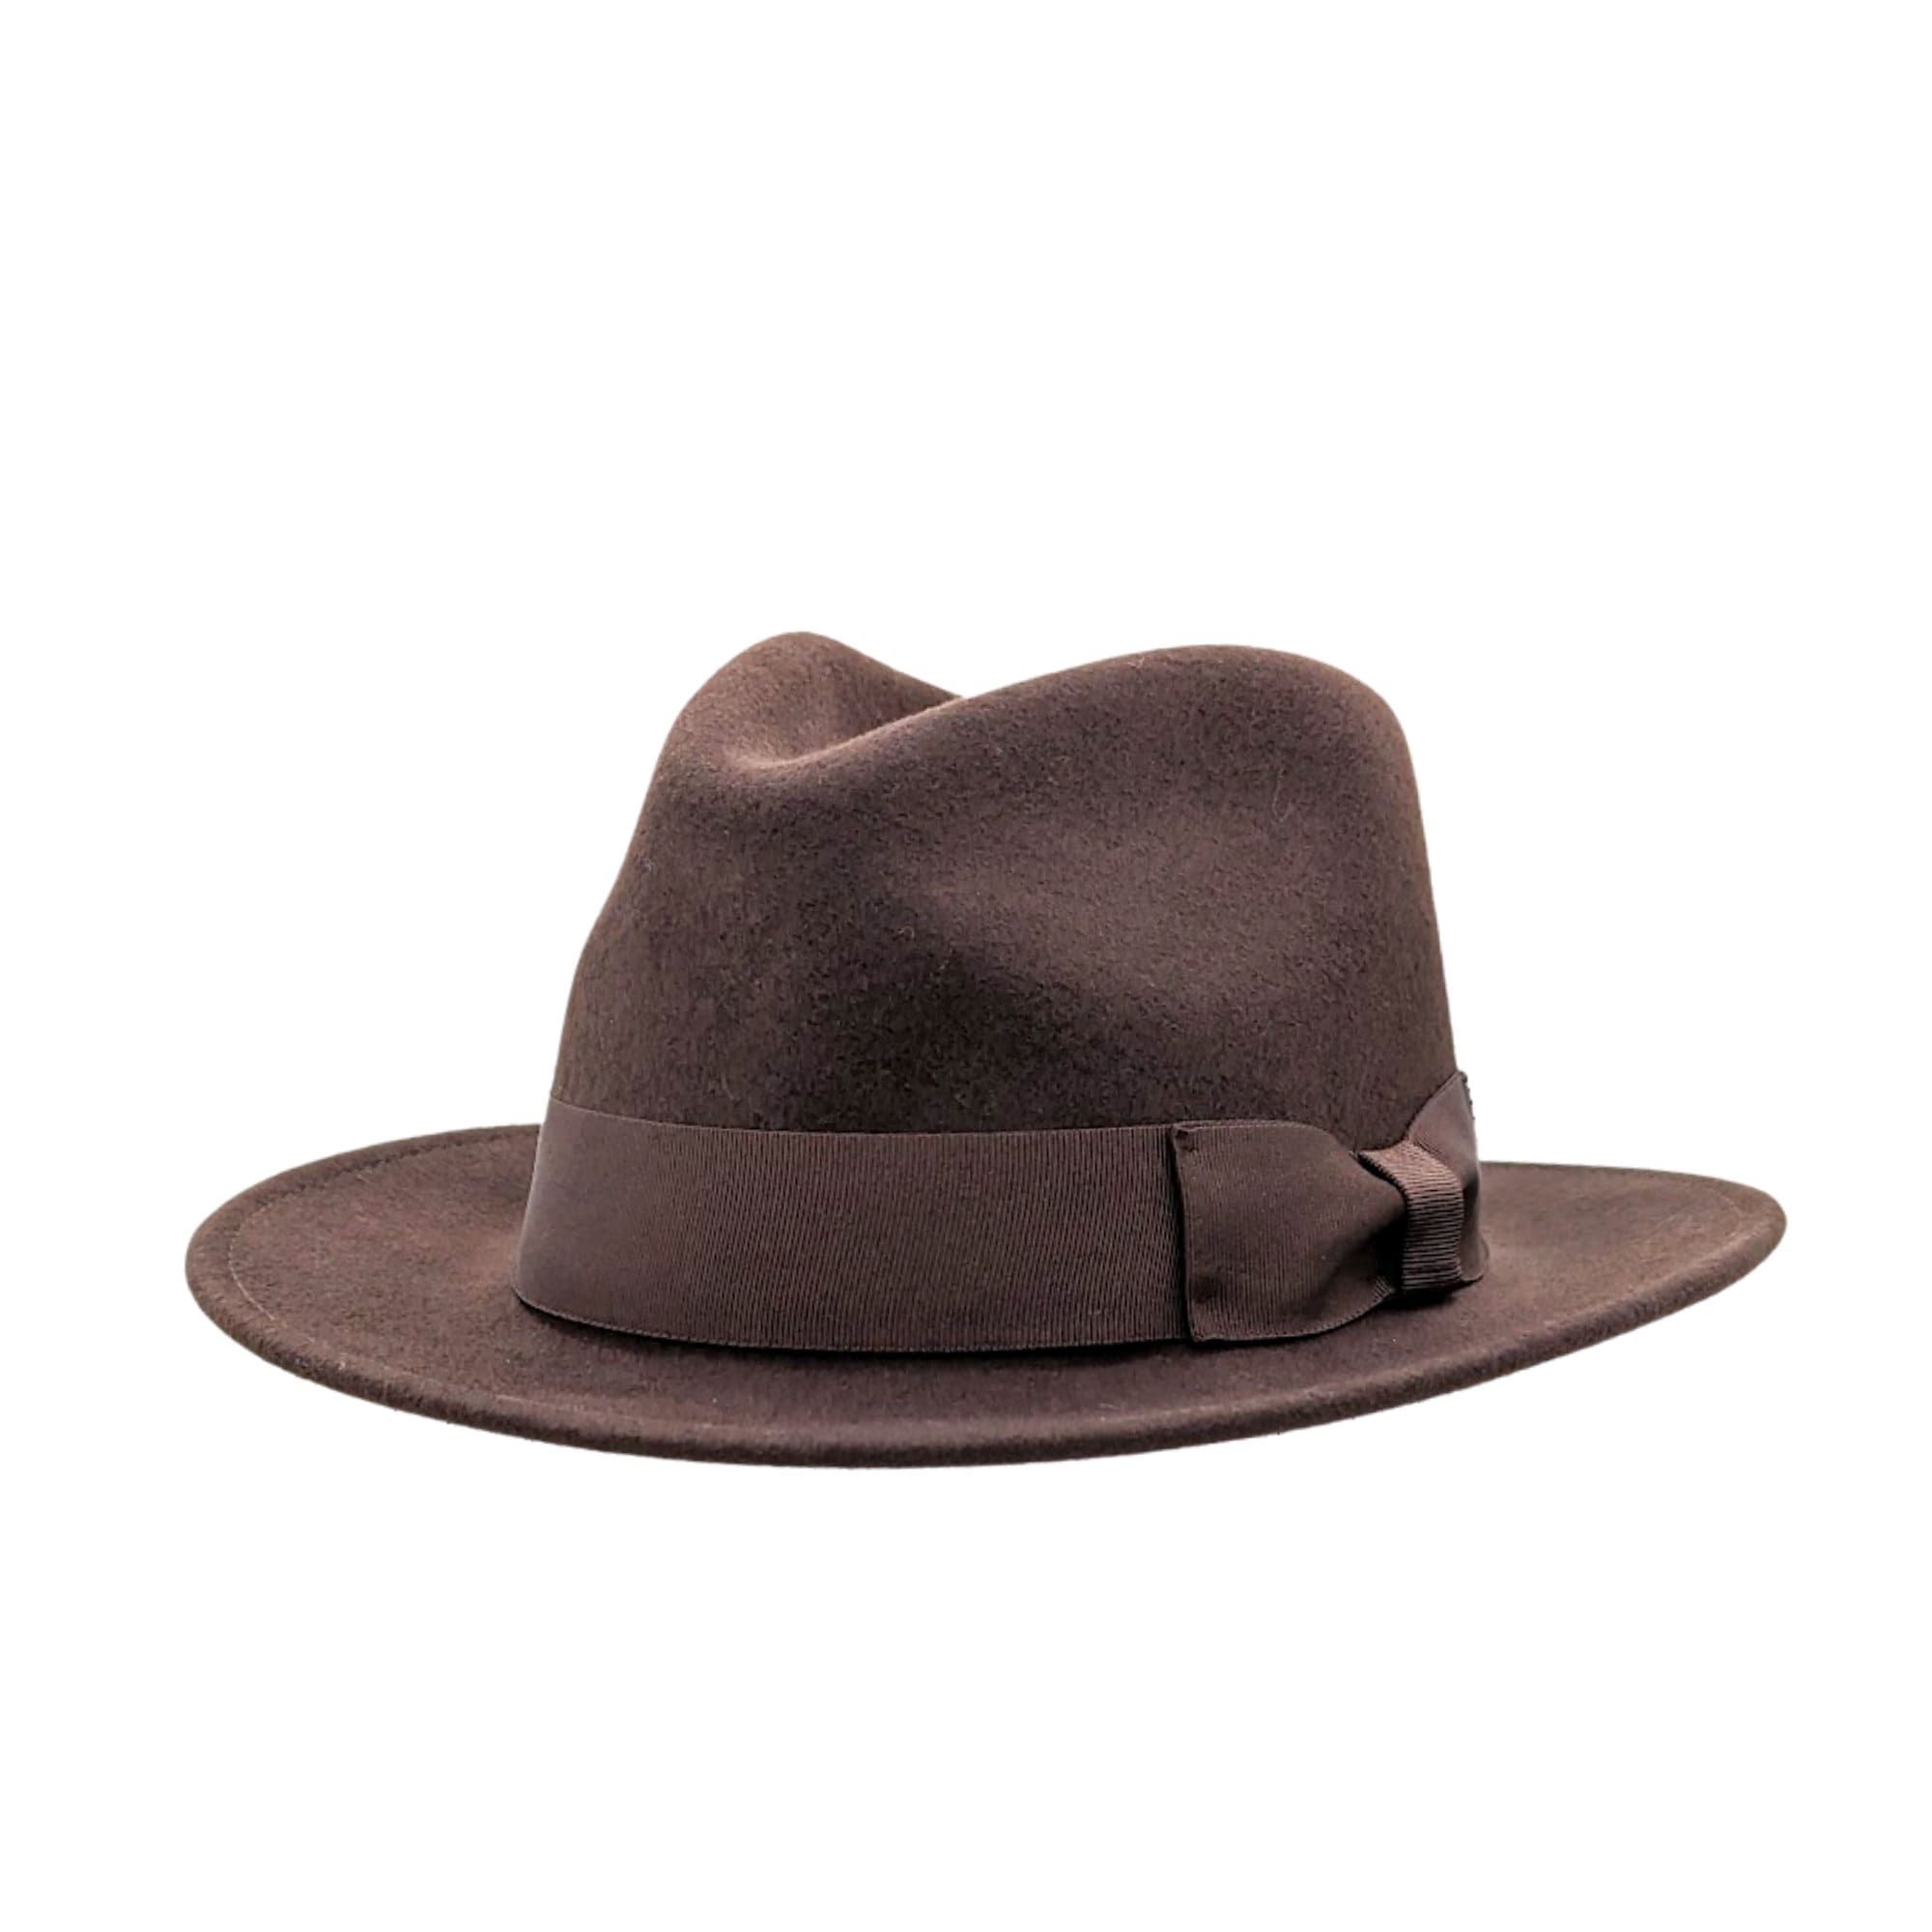 Indiana Jones Style Fedora Foldable Hat